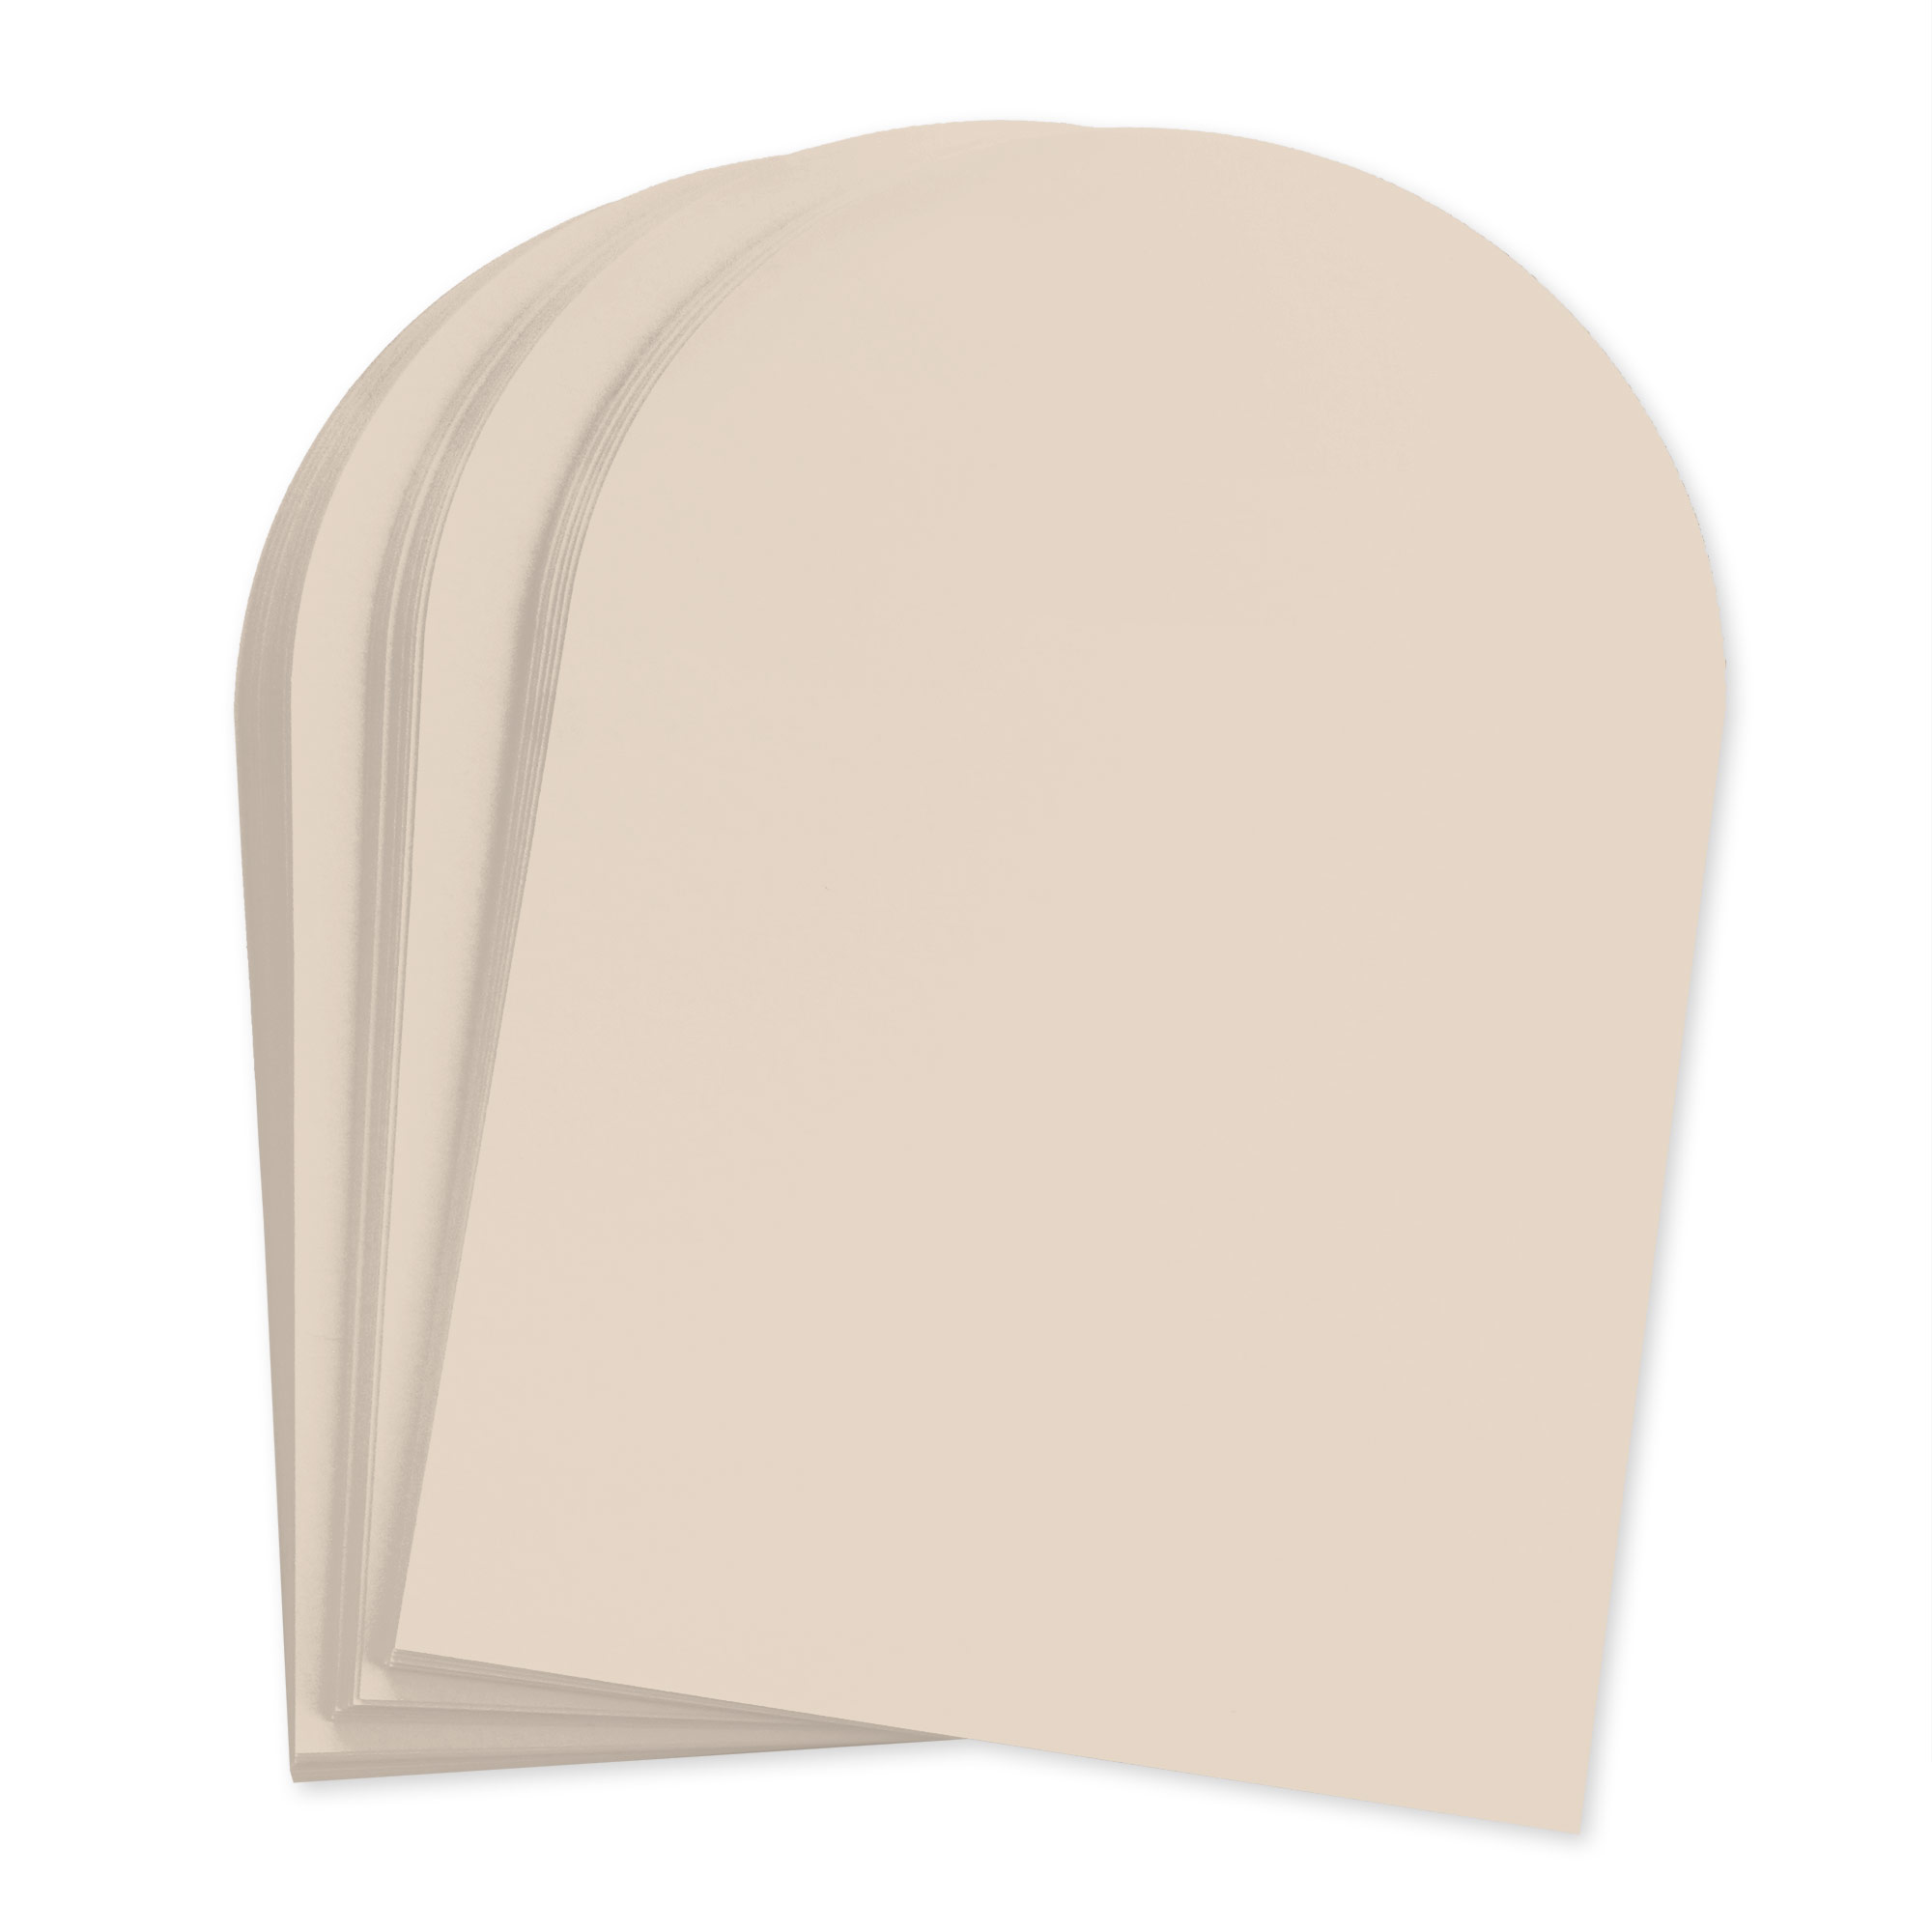 Chardonnay Beige Arch Shaped Card - A2 Gmund Colors Matt 4 1/4 x 5 1/2 111C